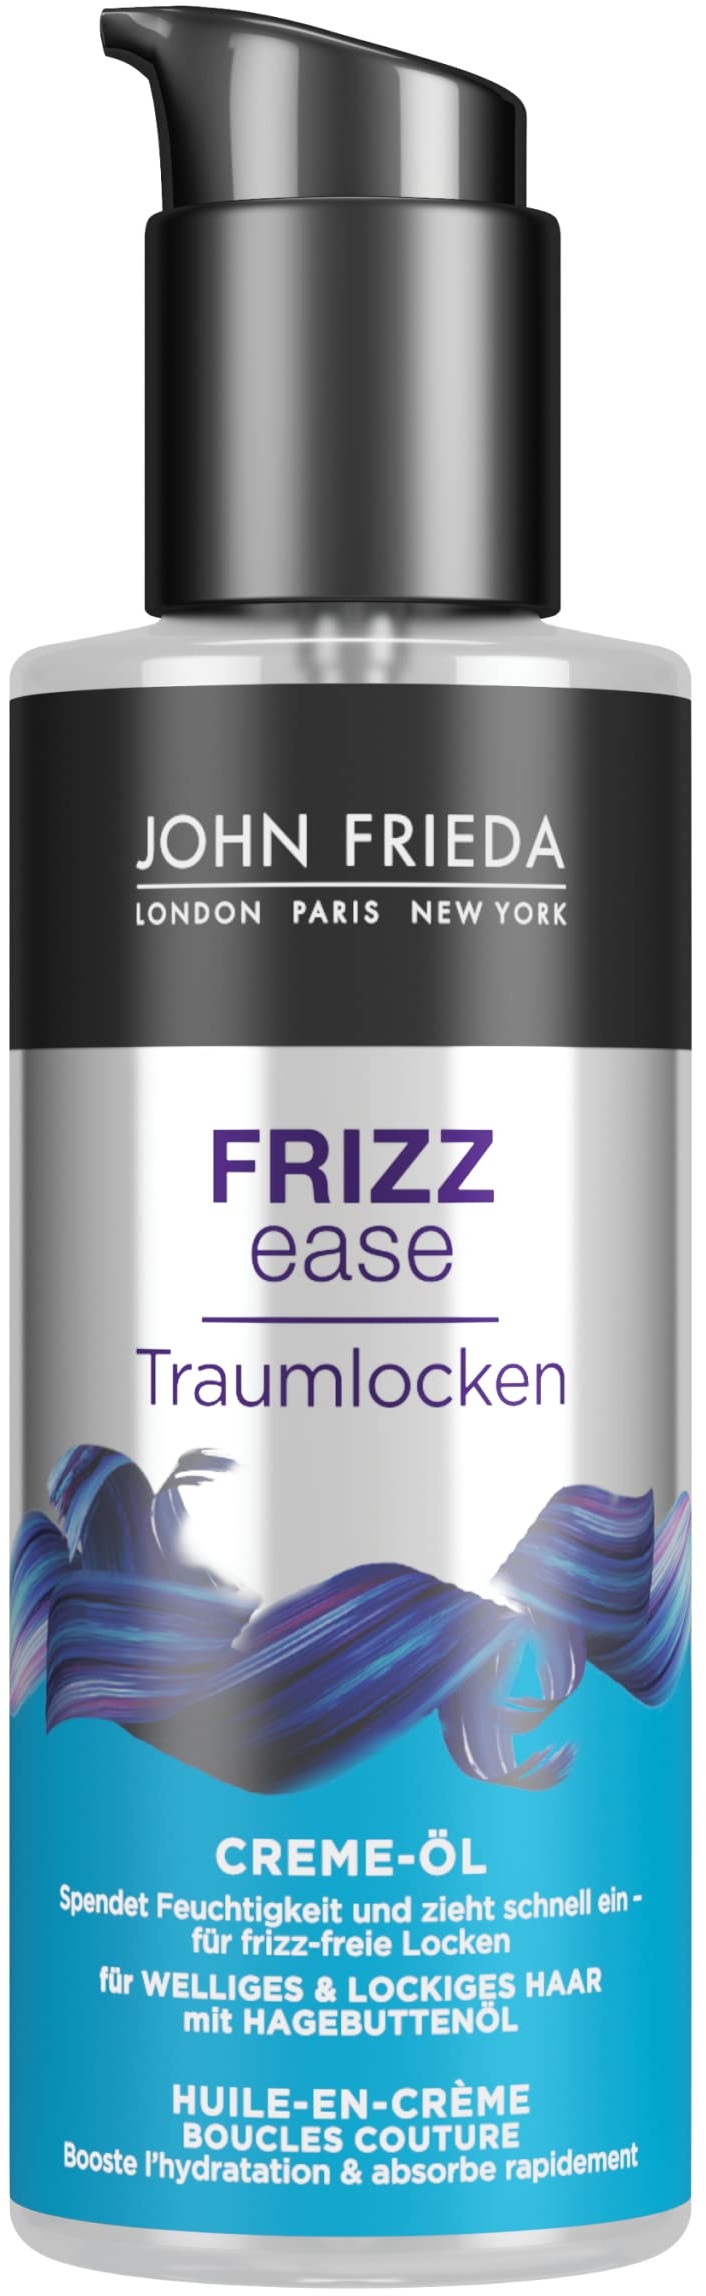 John Frieda Traumlocken - Creme-Öl - Für frizz-freie Locken - Aus der Frizz Ease Serie, 100 ml